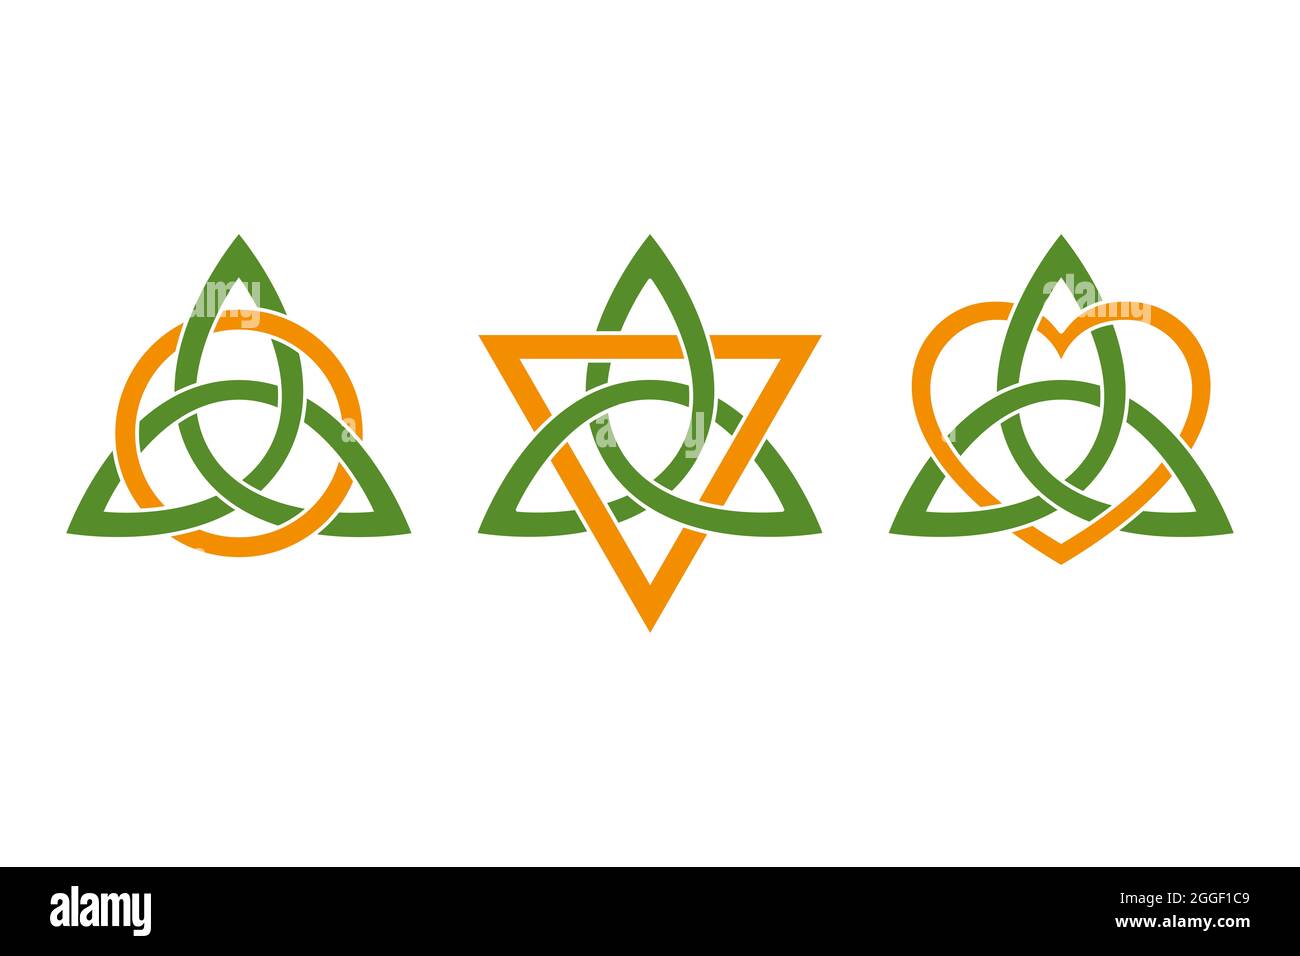 Triquetras colorati, intrecciati con tre simboli di colore arancione. Nodi celtici verdi, figure a forma di triangolo, utilizzate negli antichi ornamenti cristiani. Foto Stock